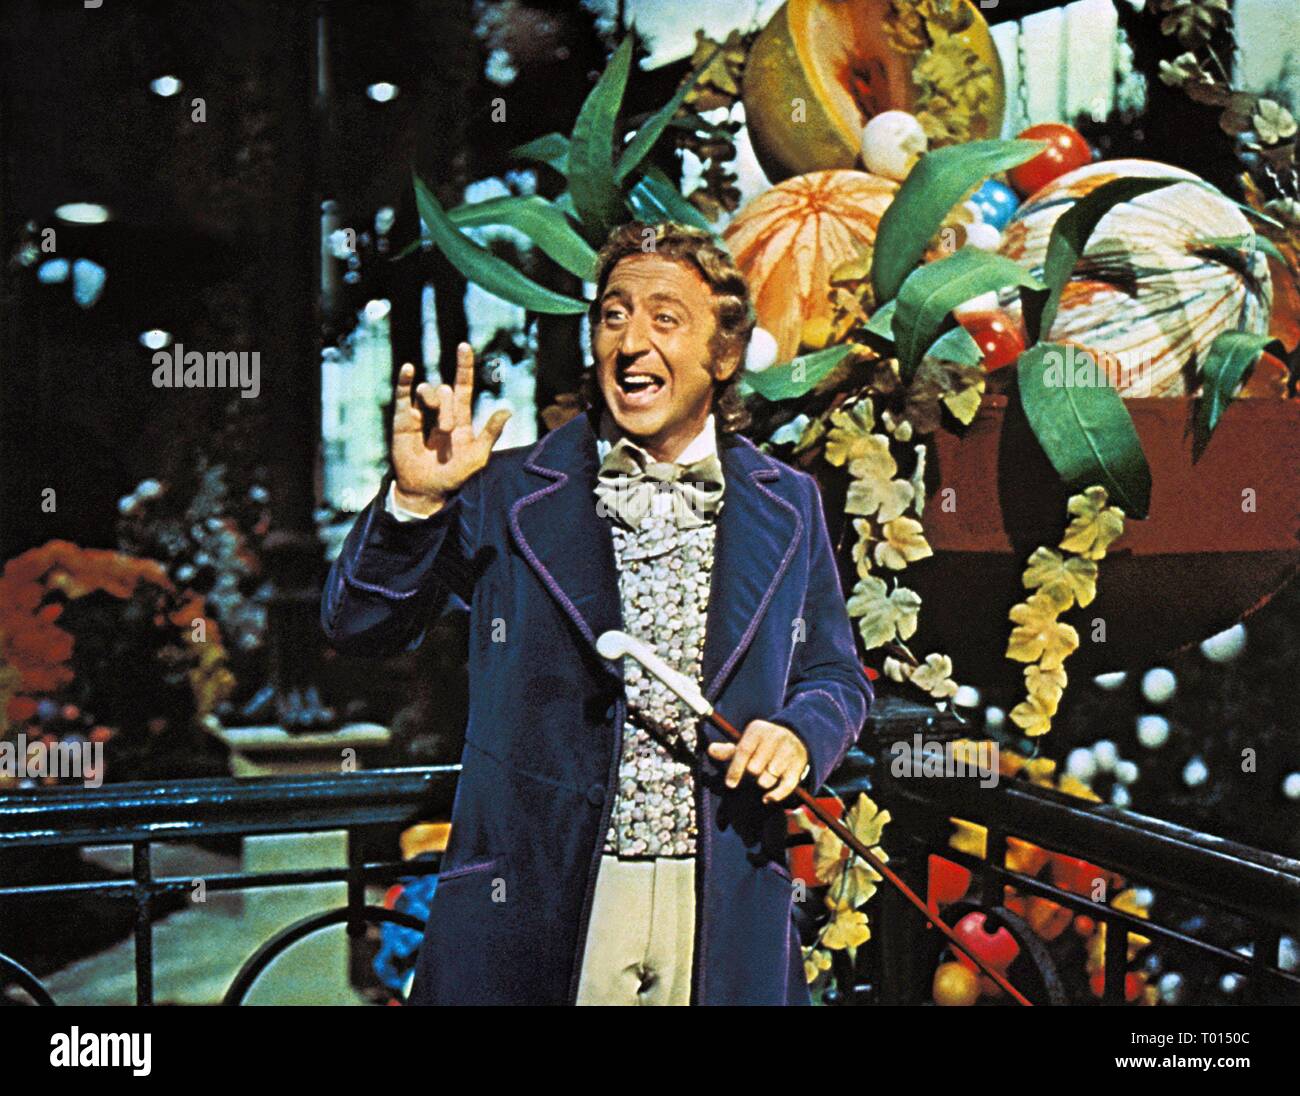 Шоколадная фабрика 1971 года. Willy Wonka 1971. Willy Wonka and the Chocolate Factory 1971. Лесли шоколадная фабрика.